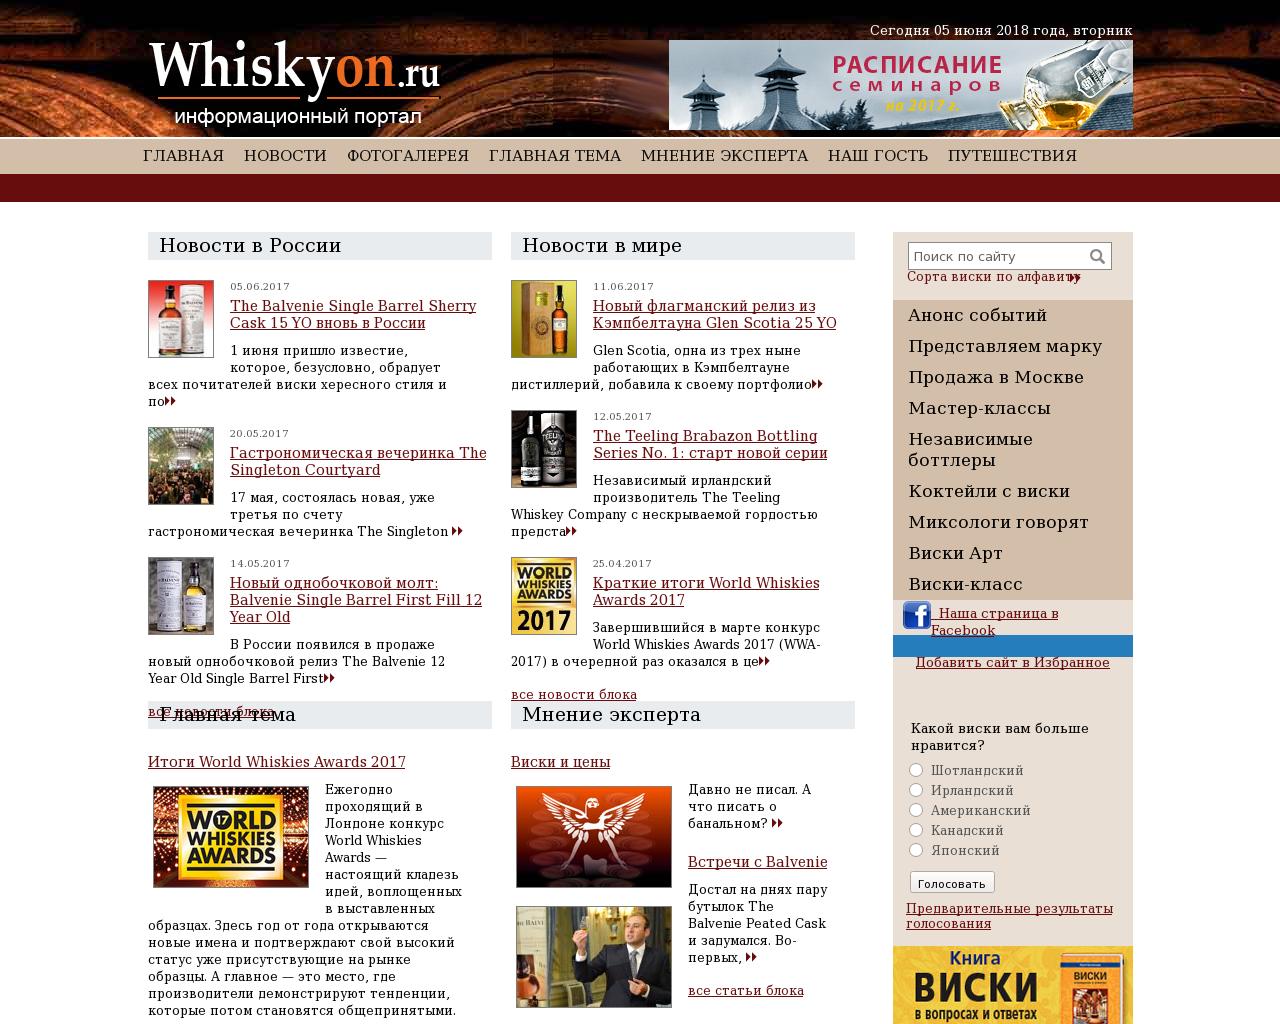 Изображение сайта whiskyon.ru в разрешении 1280x1024